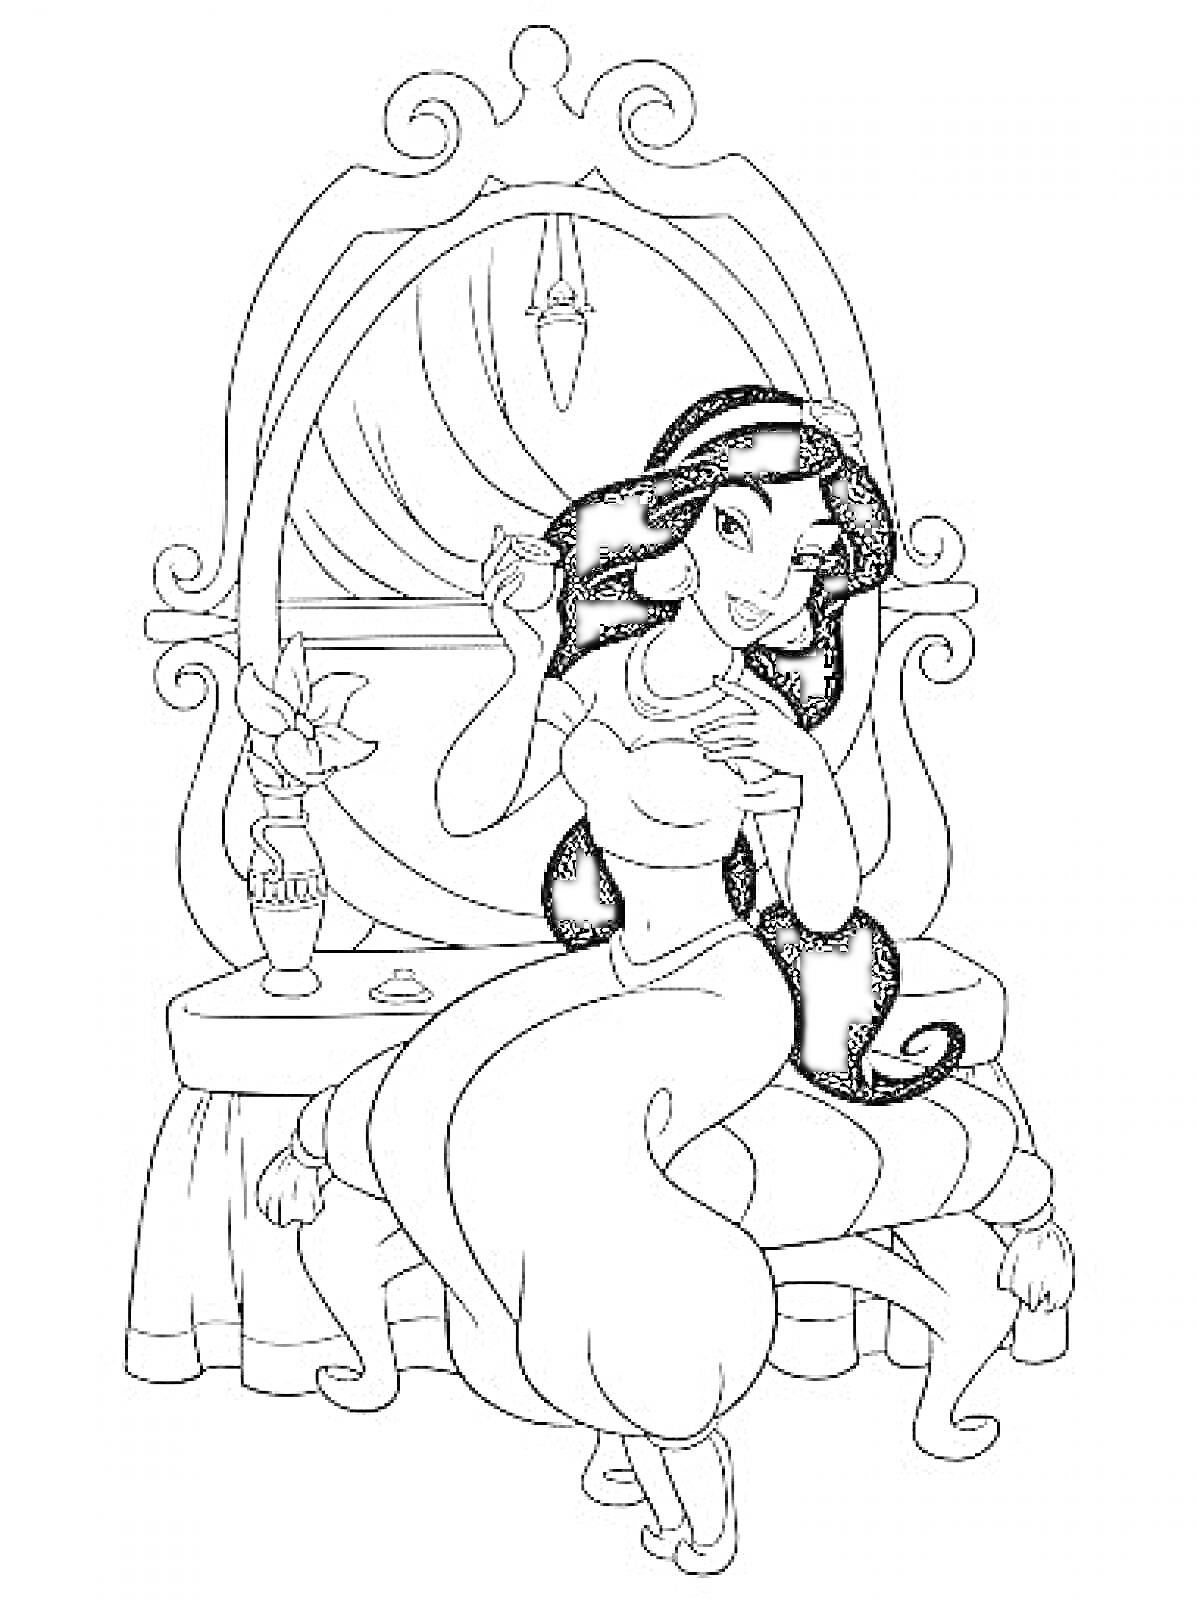 Принцесса Жасмин с распущенными волосами, сидящая перед туалетным столиком, с зеркалом, цветком в вазе и косметикой